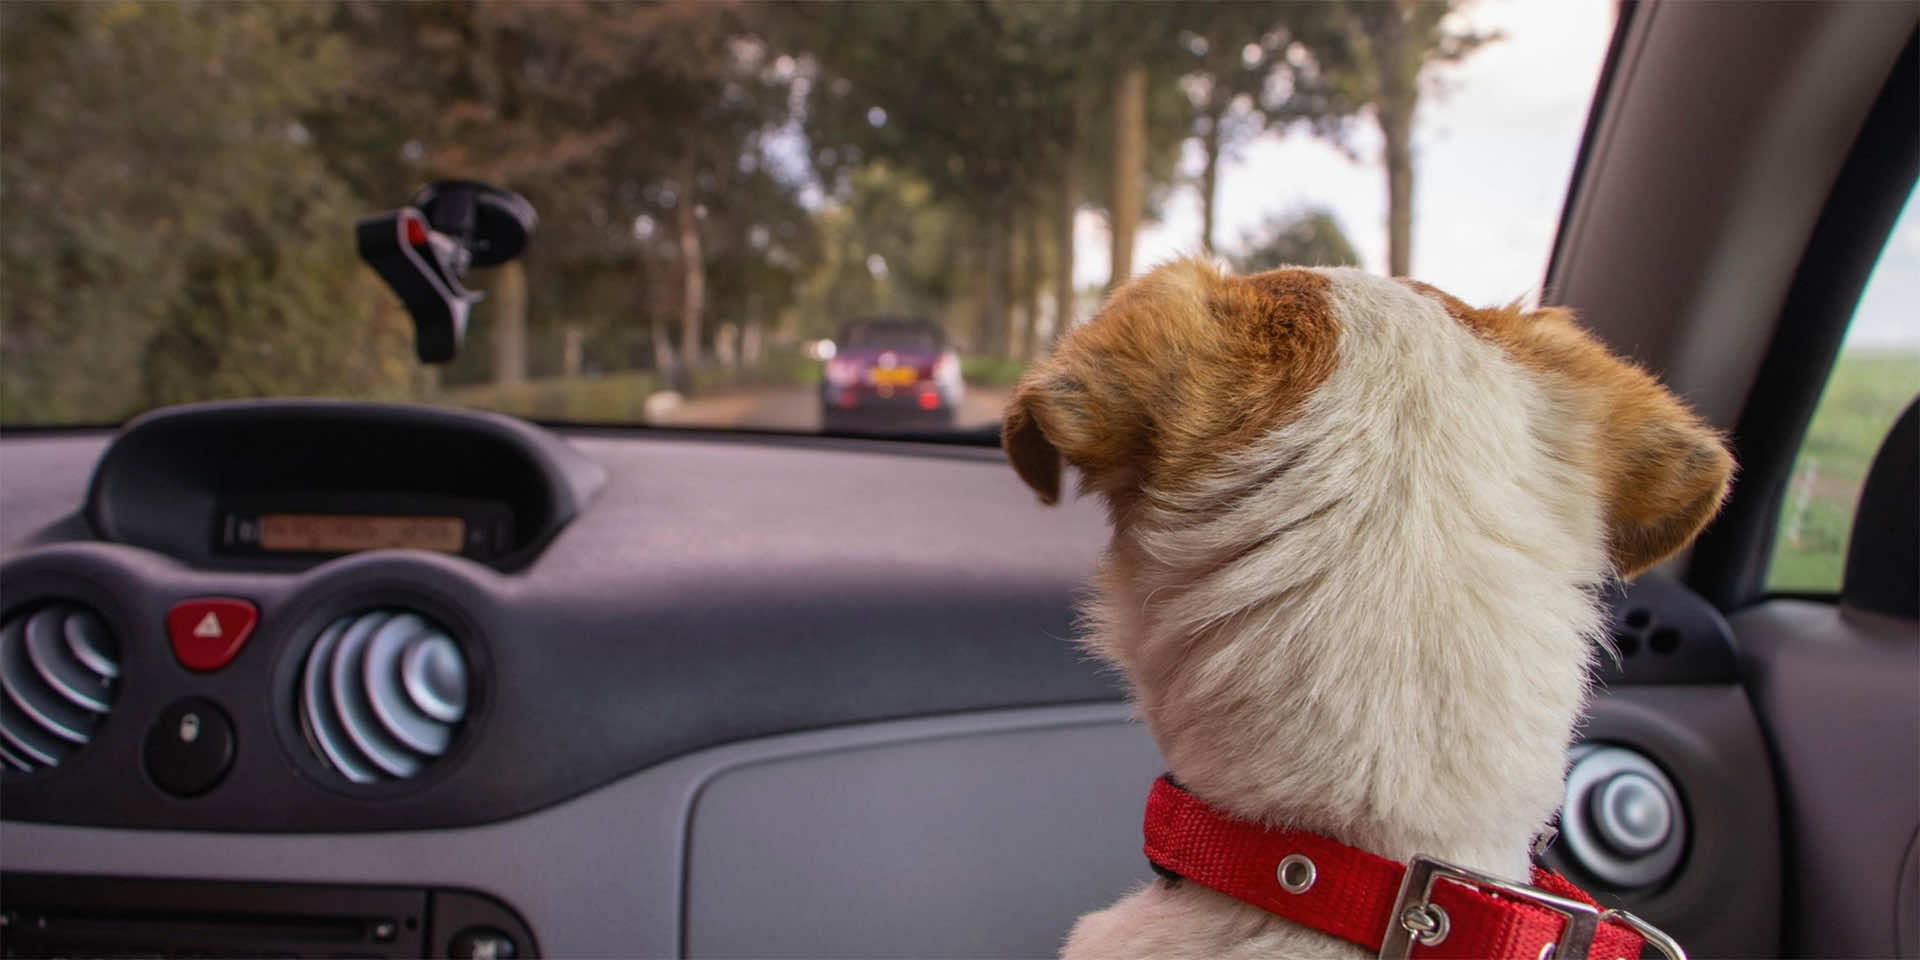 Dog looking over car dashboard